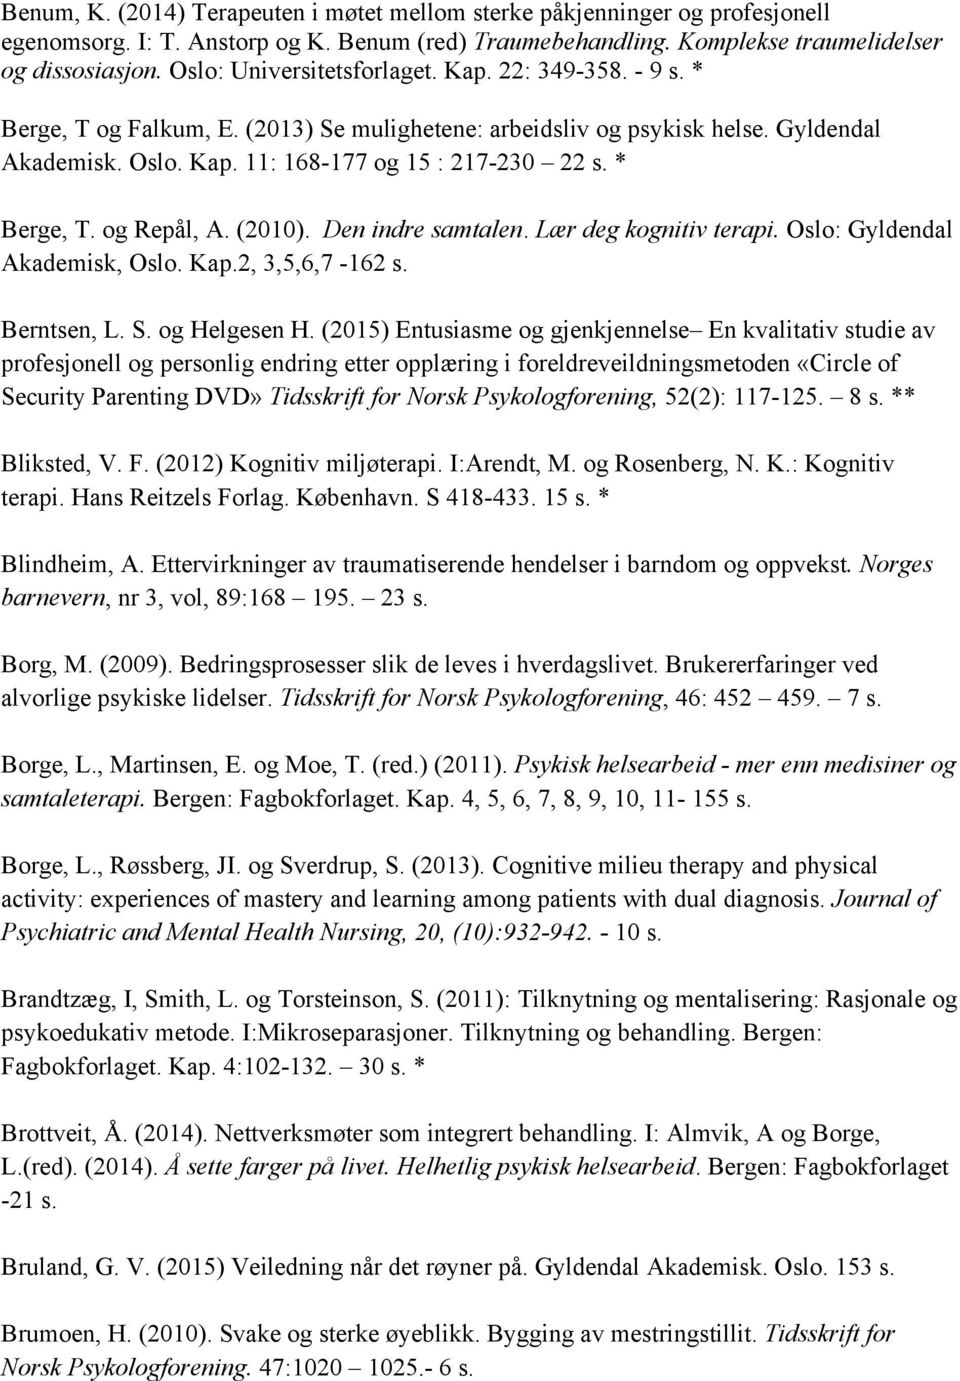 * Berge, T. og Repål, A. (2010). Den indre samtalen. Lær deg kognitiv terapi. Oslo: Gyldendal Akademisk, Oslo. Kap.2, 3,5,6,7-162 s. Berntsen, L. S. og Helgesen H.